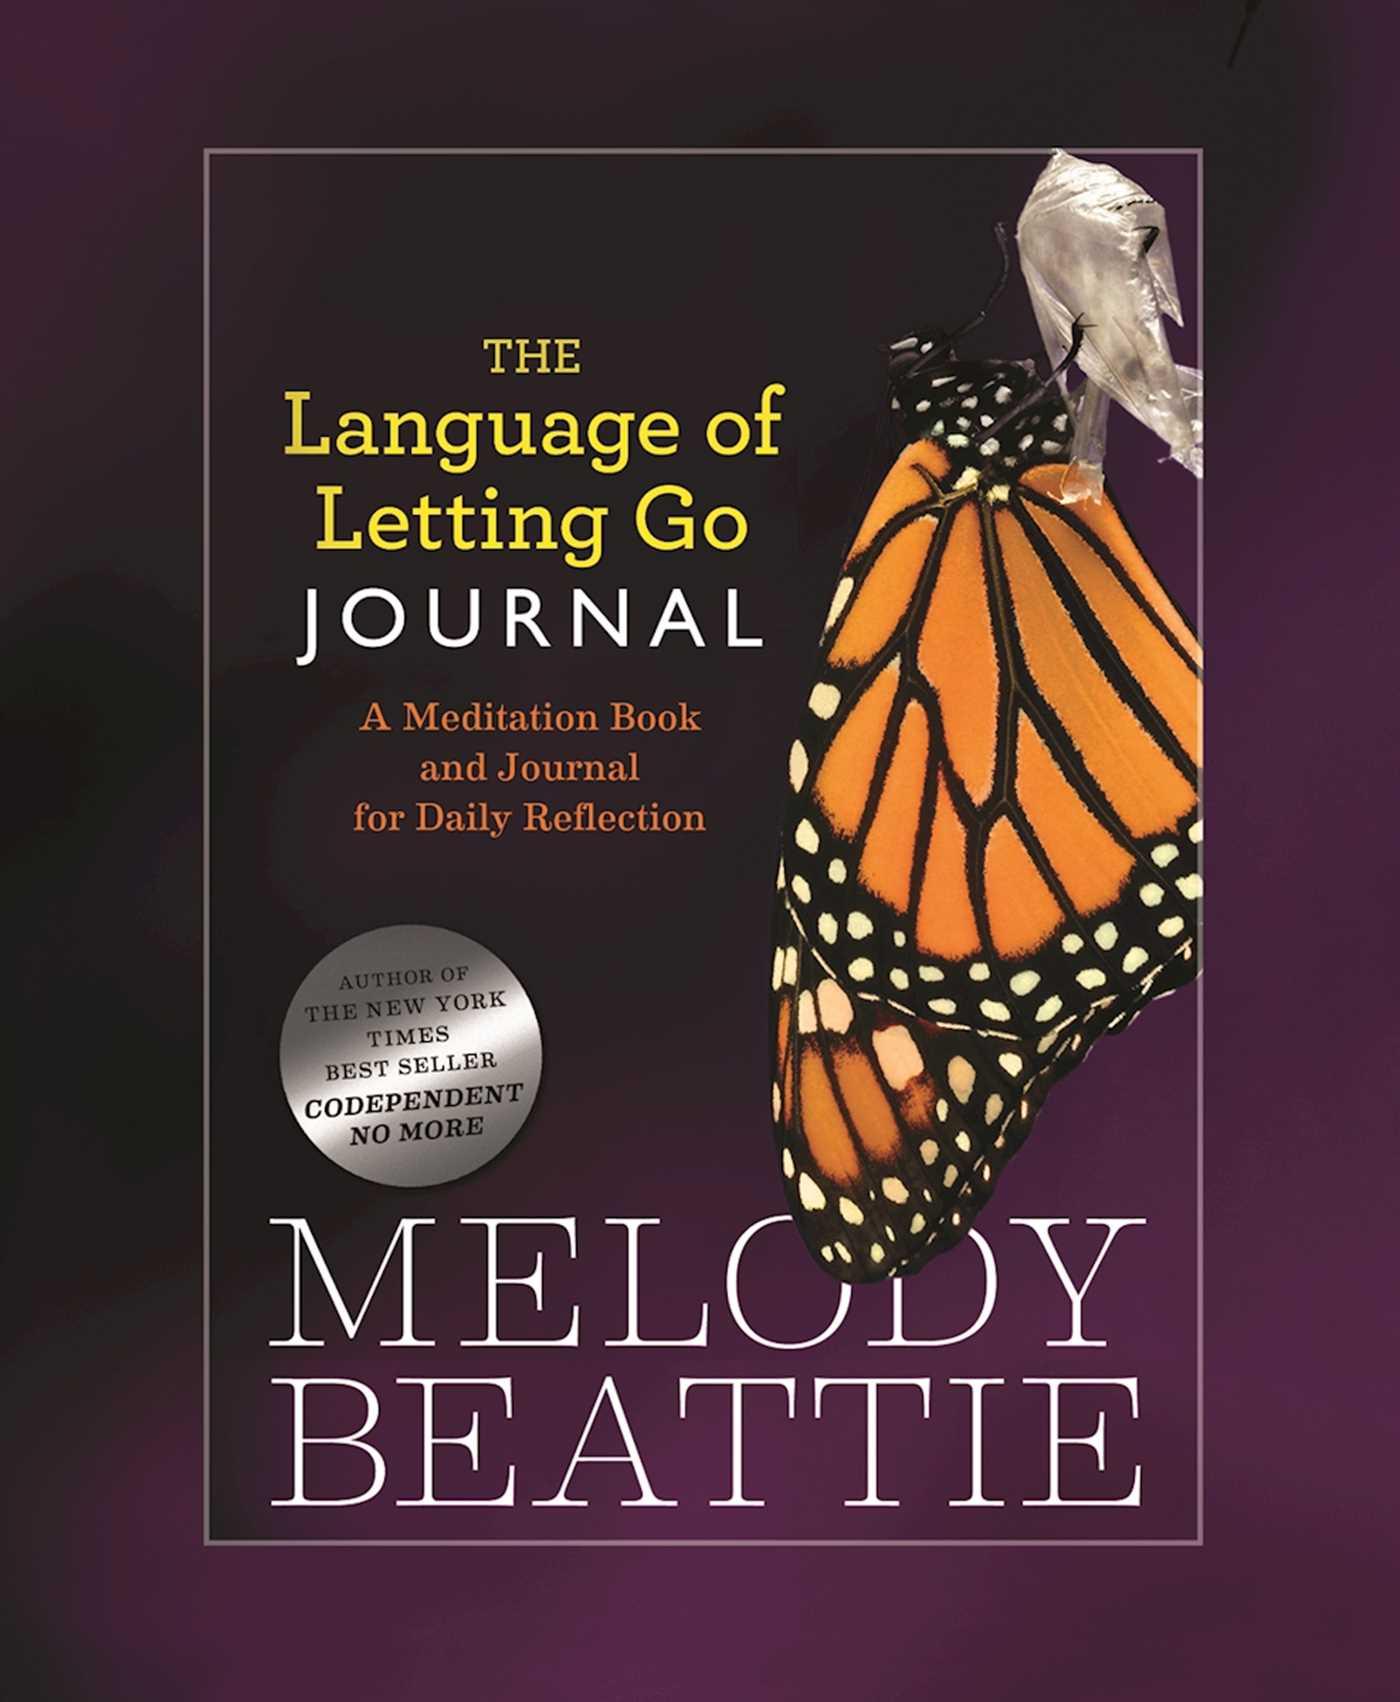 The Language of Letting Go Journal / Melody Beattie / Taschenbuch / Kartoniert / Broschiert / Englisch / 2003 / Hazelden Publishing & Educational Services / EAN 9781568389844 - Beattie, Melody